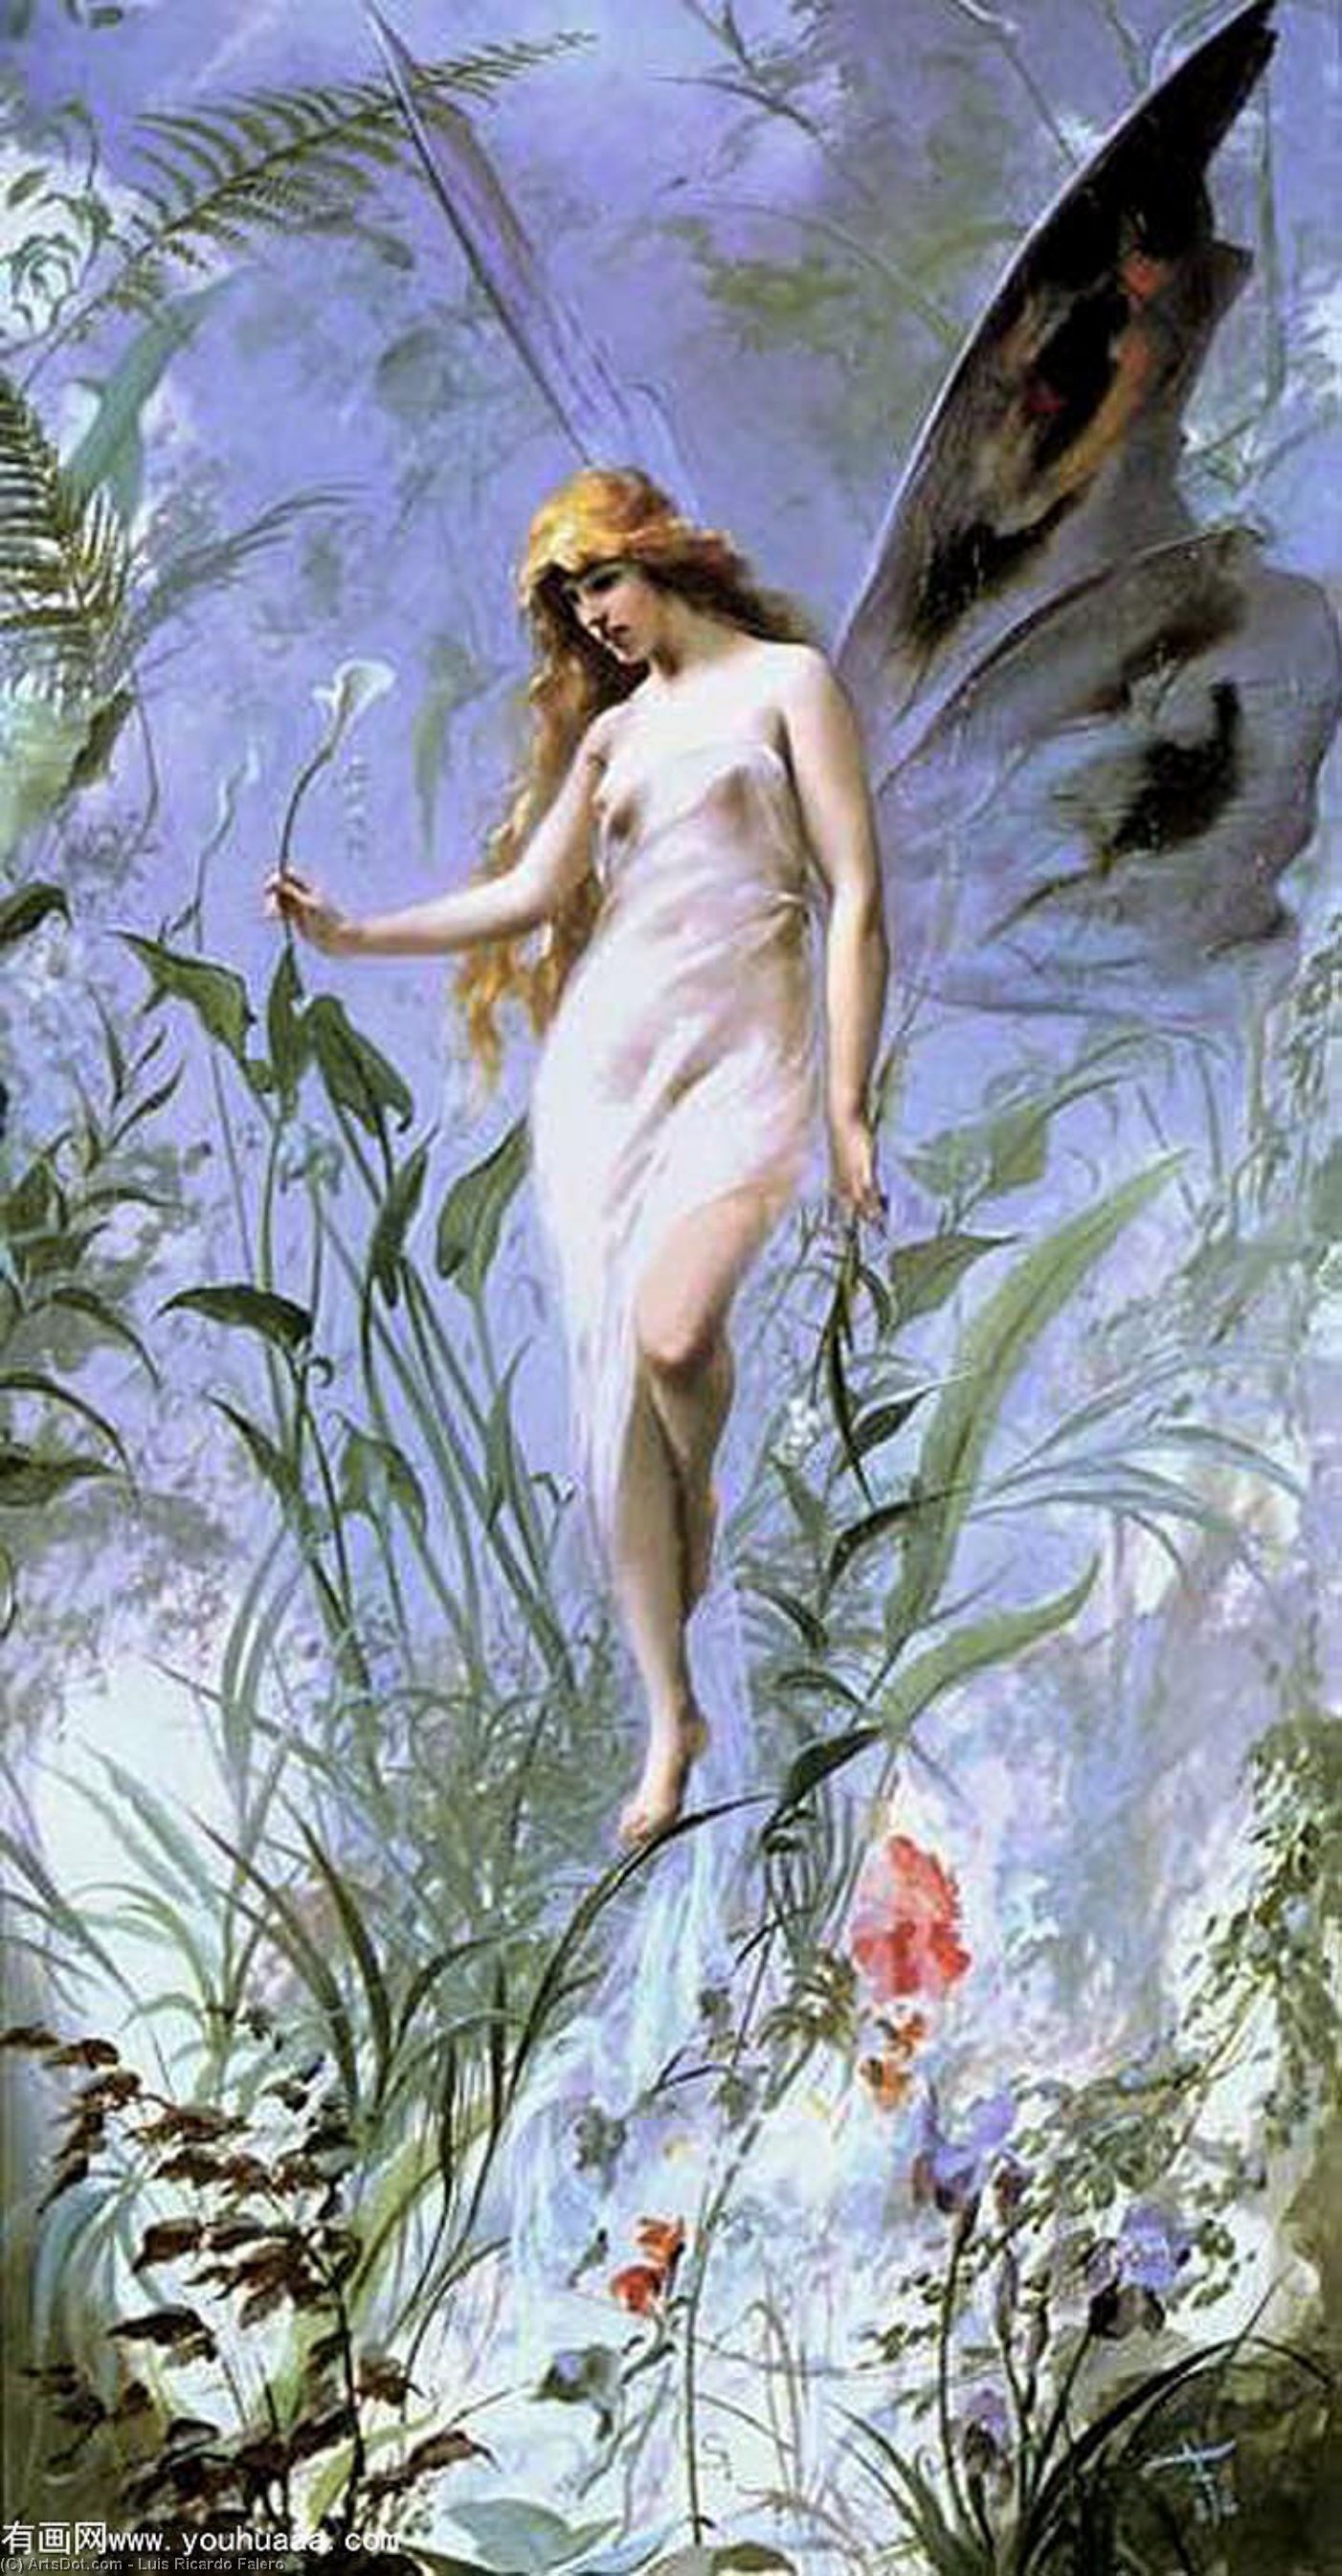 WikiOO.org - Güzel Sanatlar Ansiklopedisi - Resim, Resimler Luis Ricardo Falero - Lily fairy